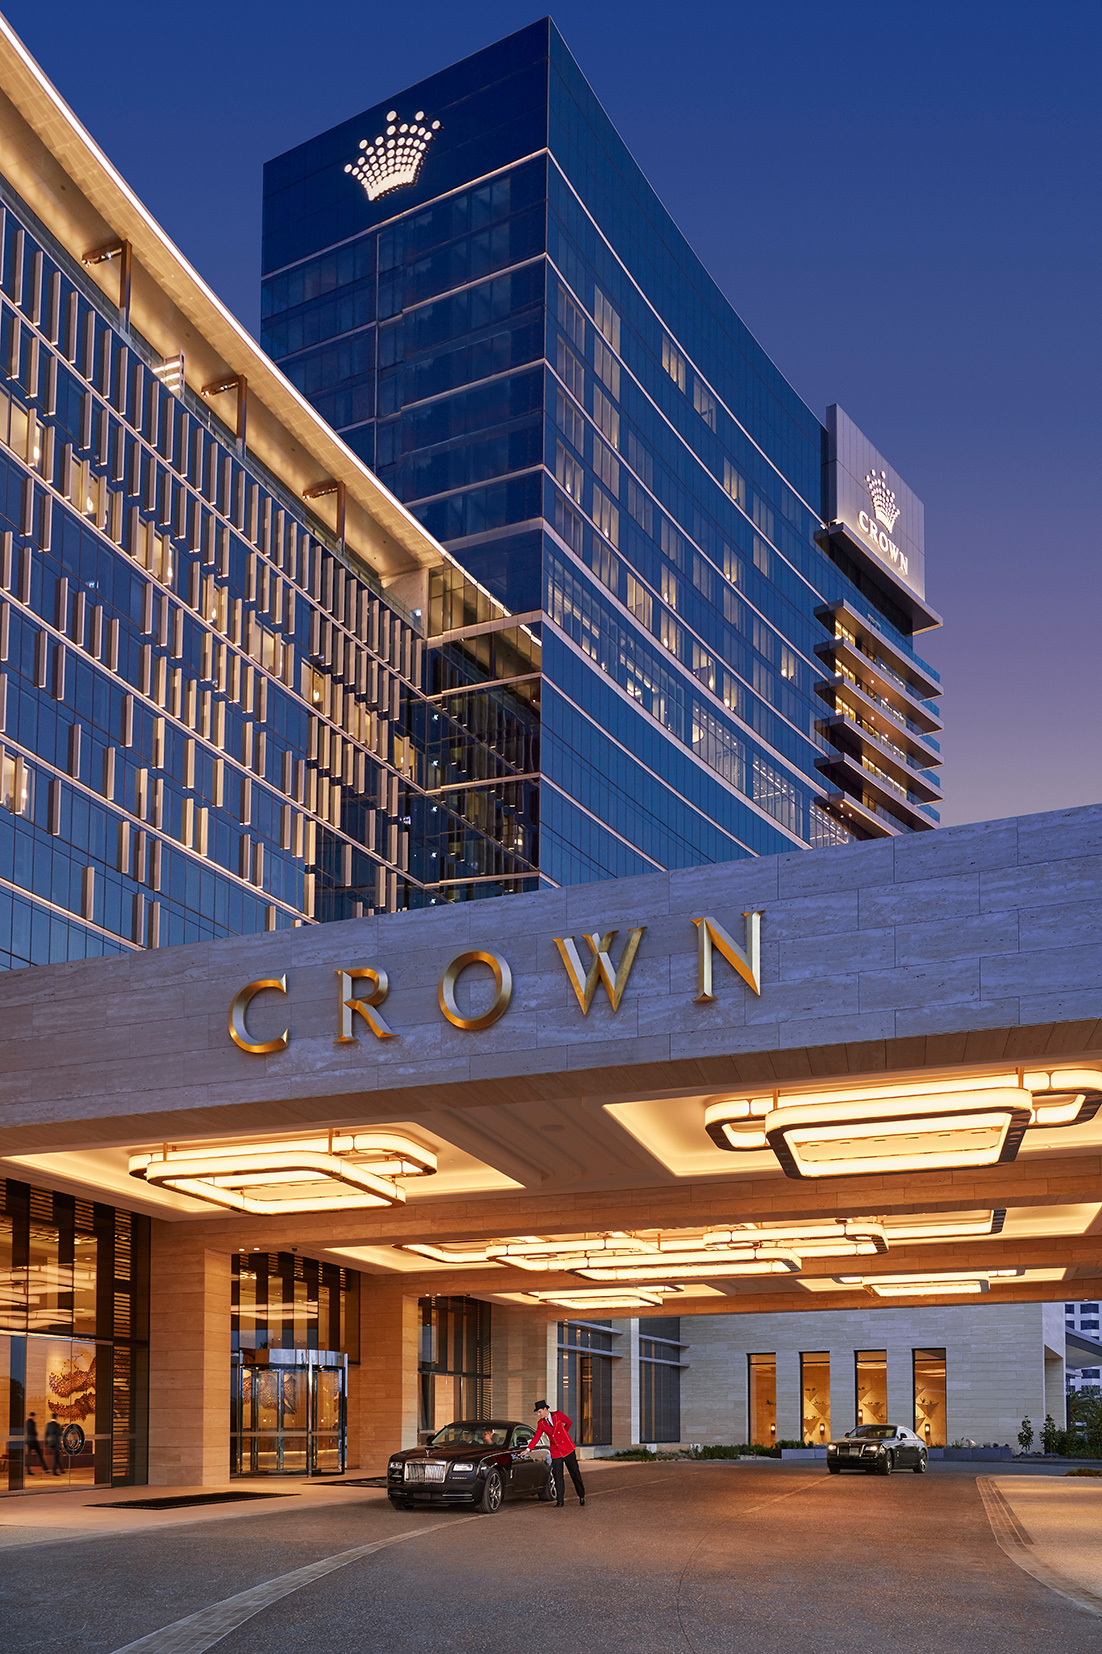 『澳洲。西澳』 柏斯 皇冠賭場酒店集團  五星級皇冠大都會柏斯酒店（Crown Metropol）、四星級皇冠長廊柏斯酒店（Crown Promenade Perth Hotel）和六星級皇冠塔酒店（Crown Tower）｜雄獅 玩轉西澳 七日 粉紅湖 沙漠小探險之旅